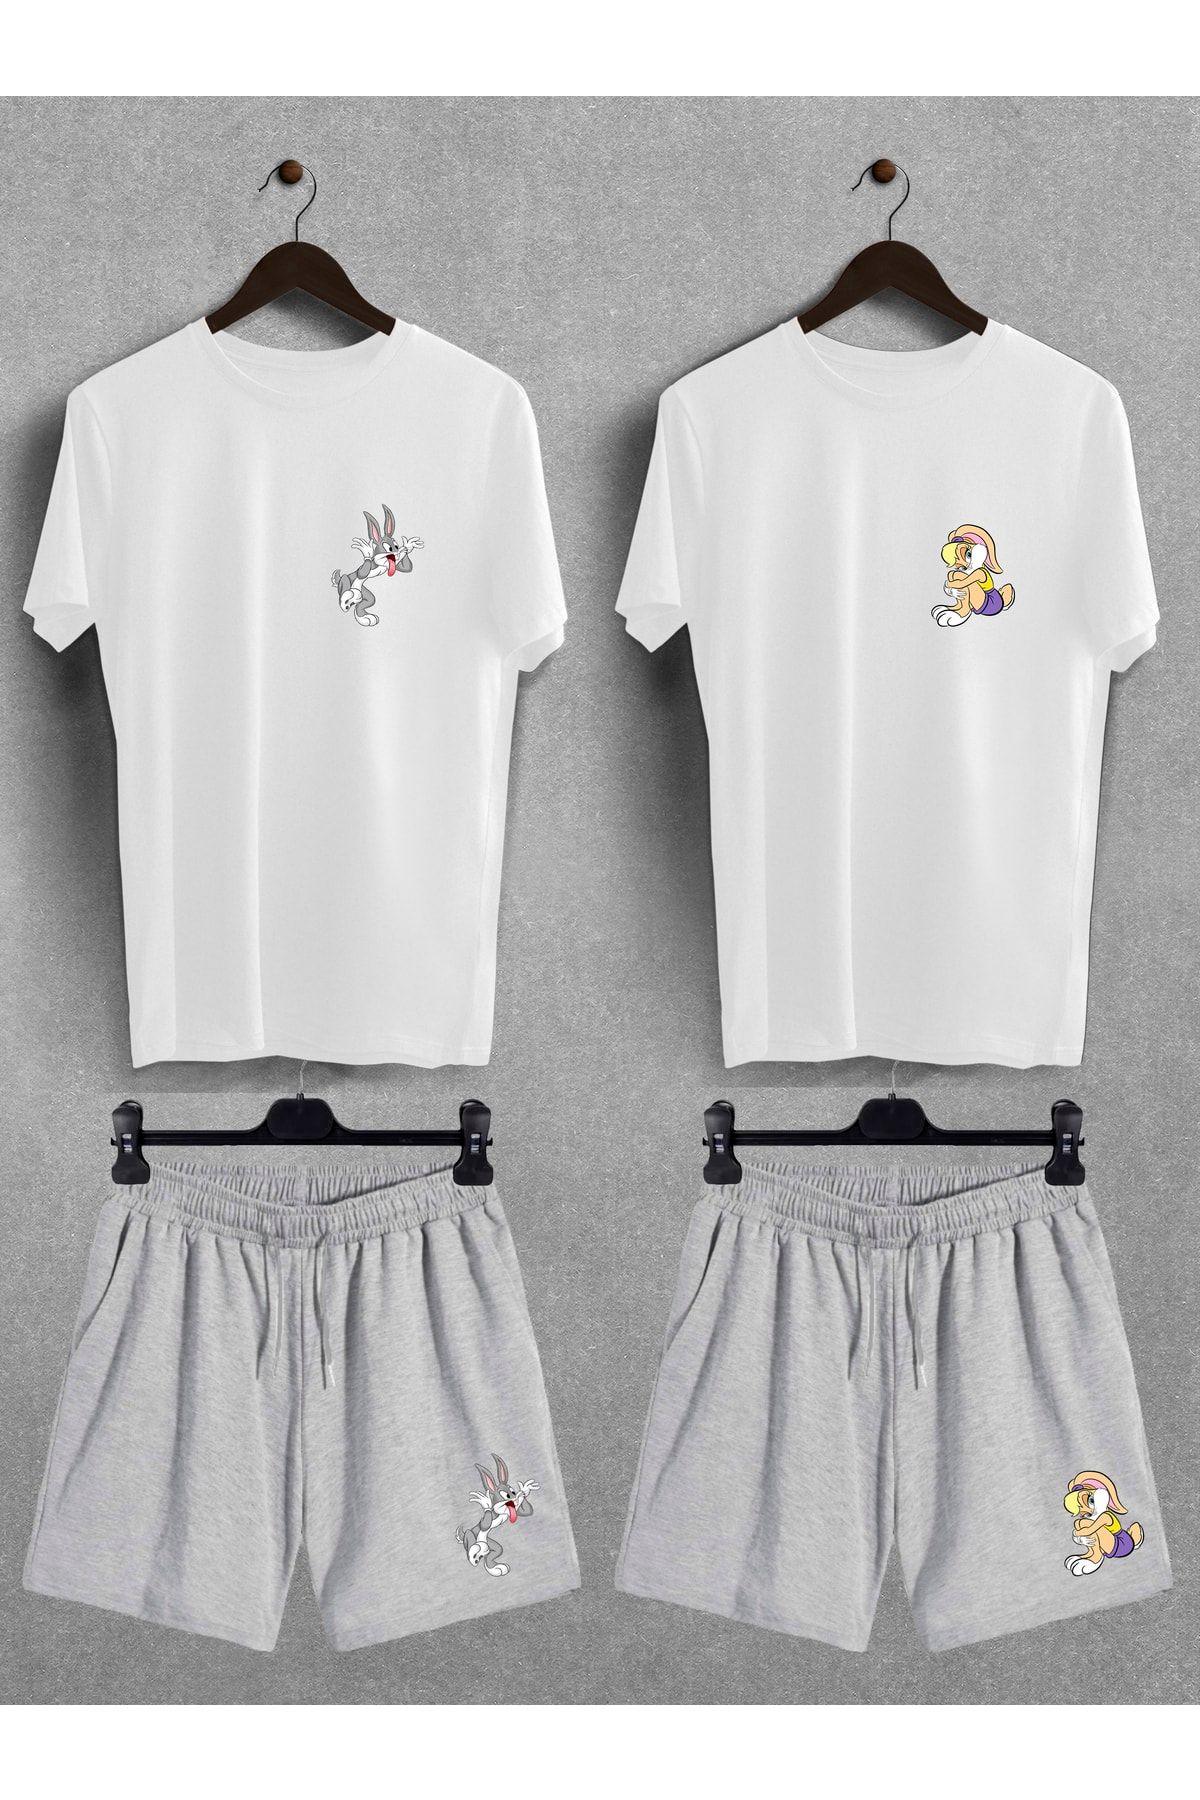 Pear Wear Bugs Bunny Lola Baskılı Oversize Tişört Regular Şort Sevgili Çift Ikili Couple T-shirt Şort Takım